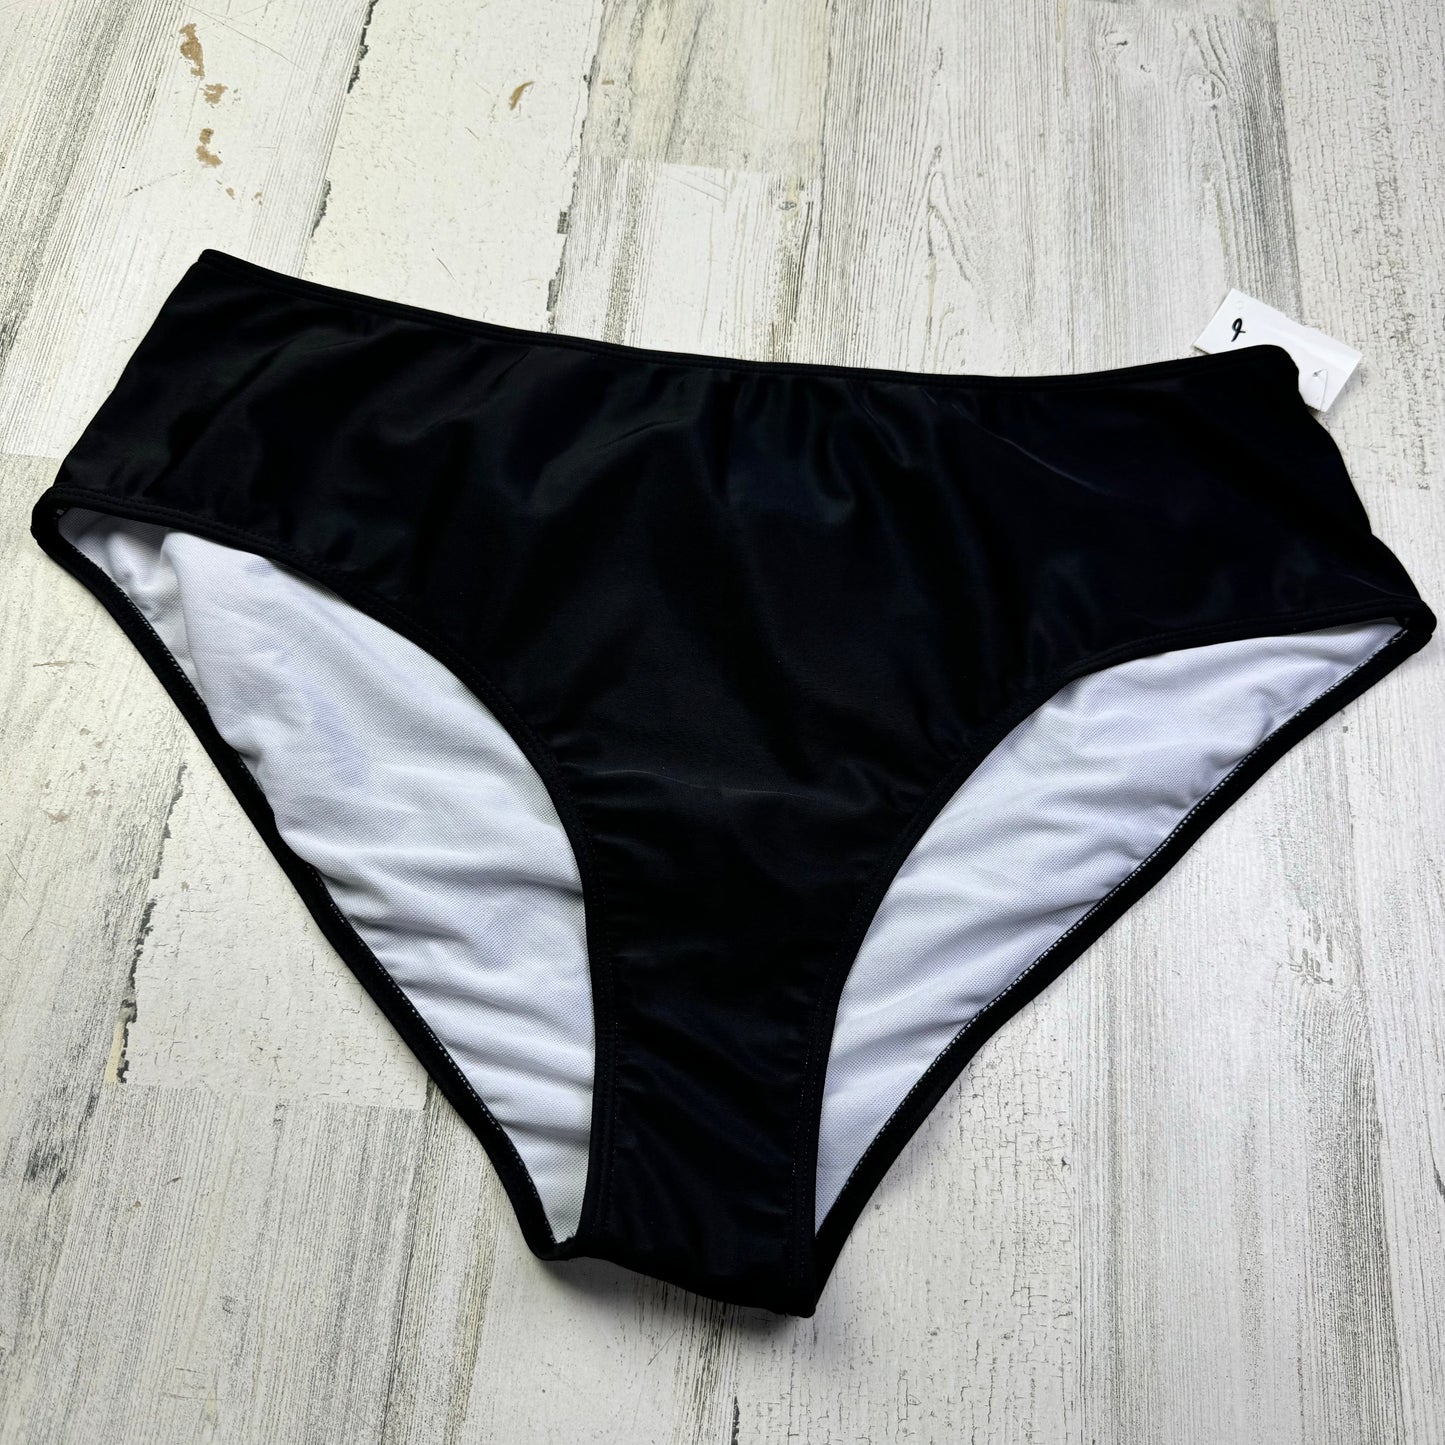 Black Swimsuit Bottom Shein, Size 4x